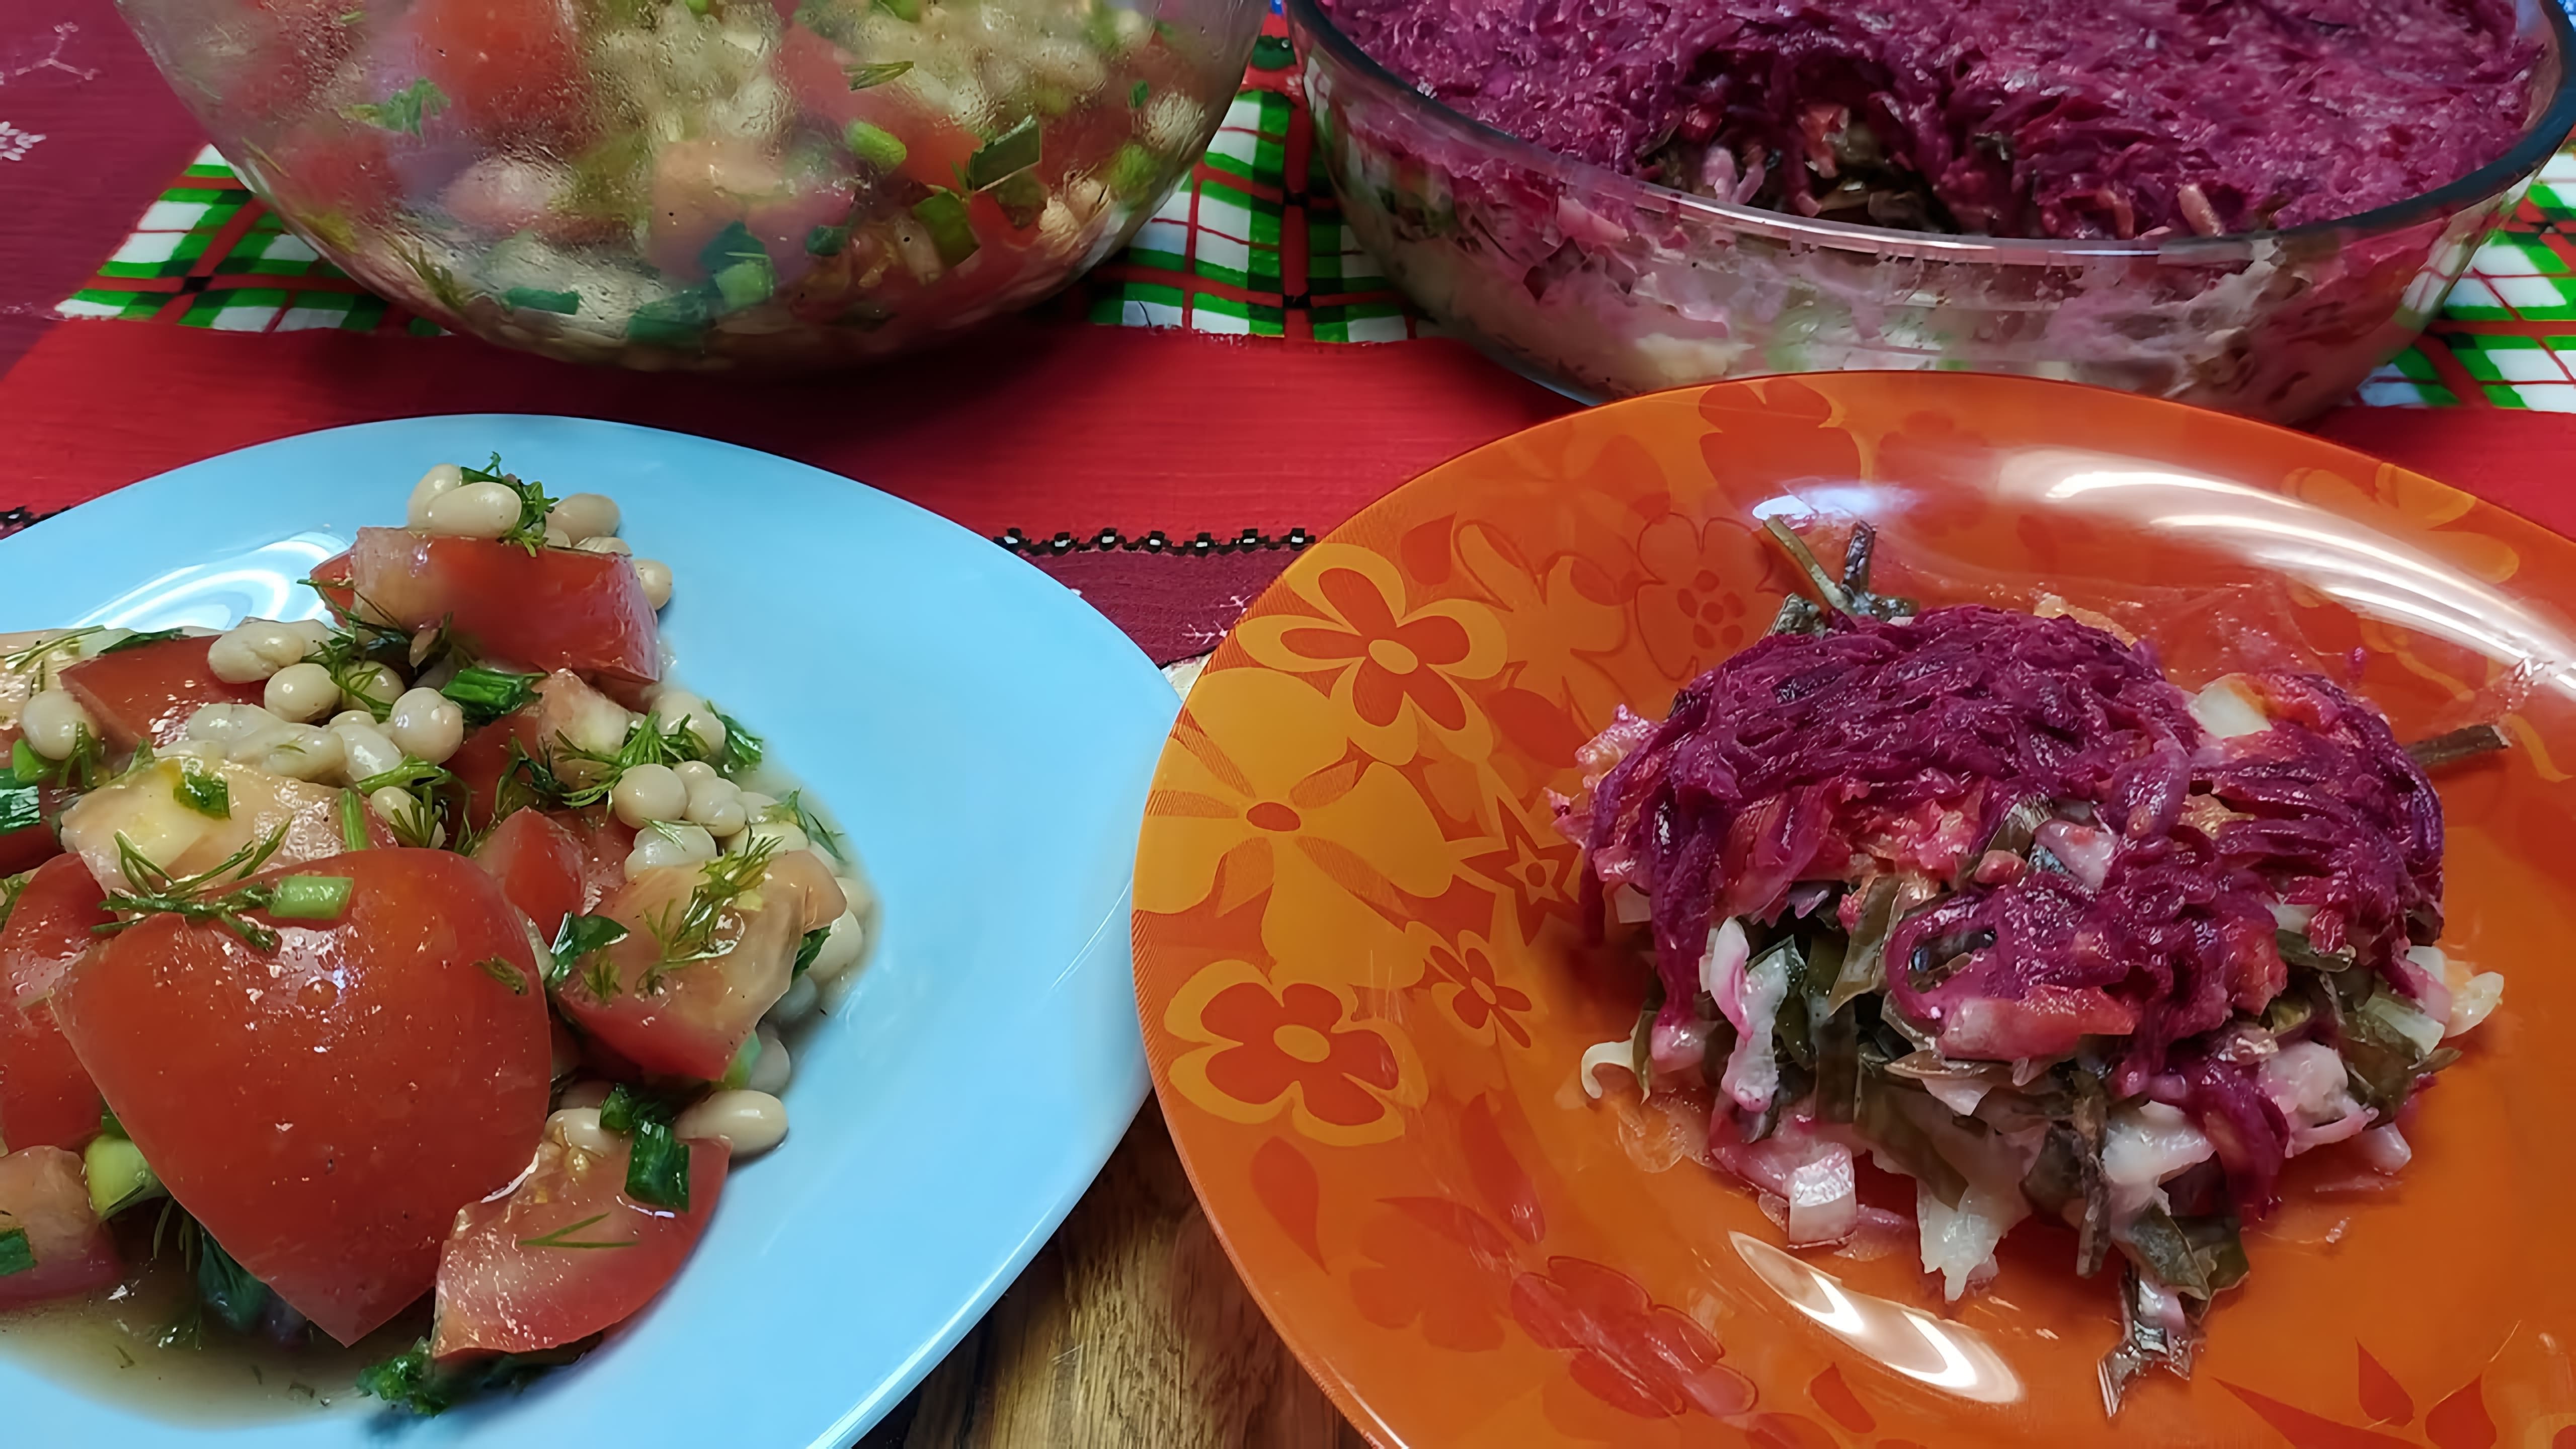 В этом видео демонстрируется приготовление двух постных салатов: салата из помидоров и фасоли, а также салата "Сельдь под шубой" без использования селедки